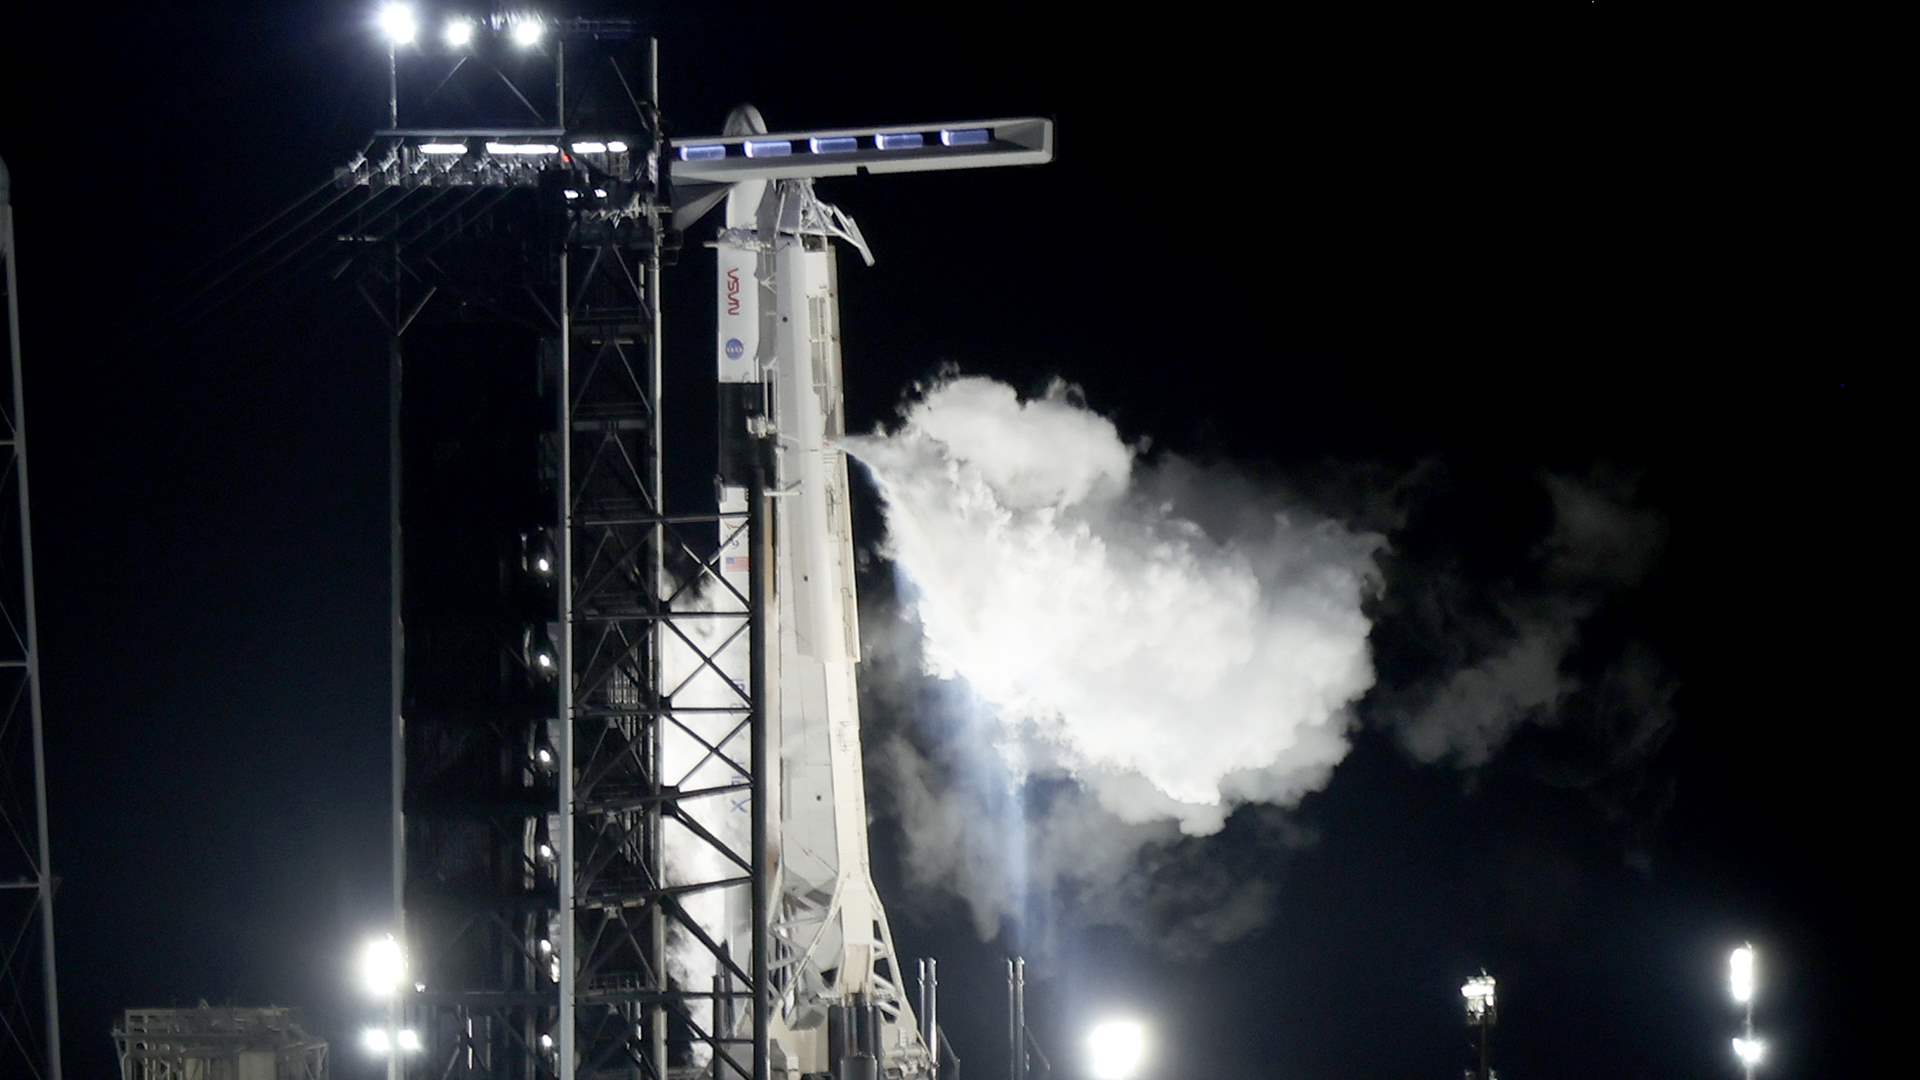 سبايس إكس تعاود إطلاق الصاروخ إلى محطة الفضاء الدولية